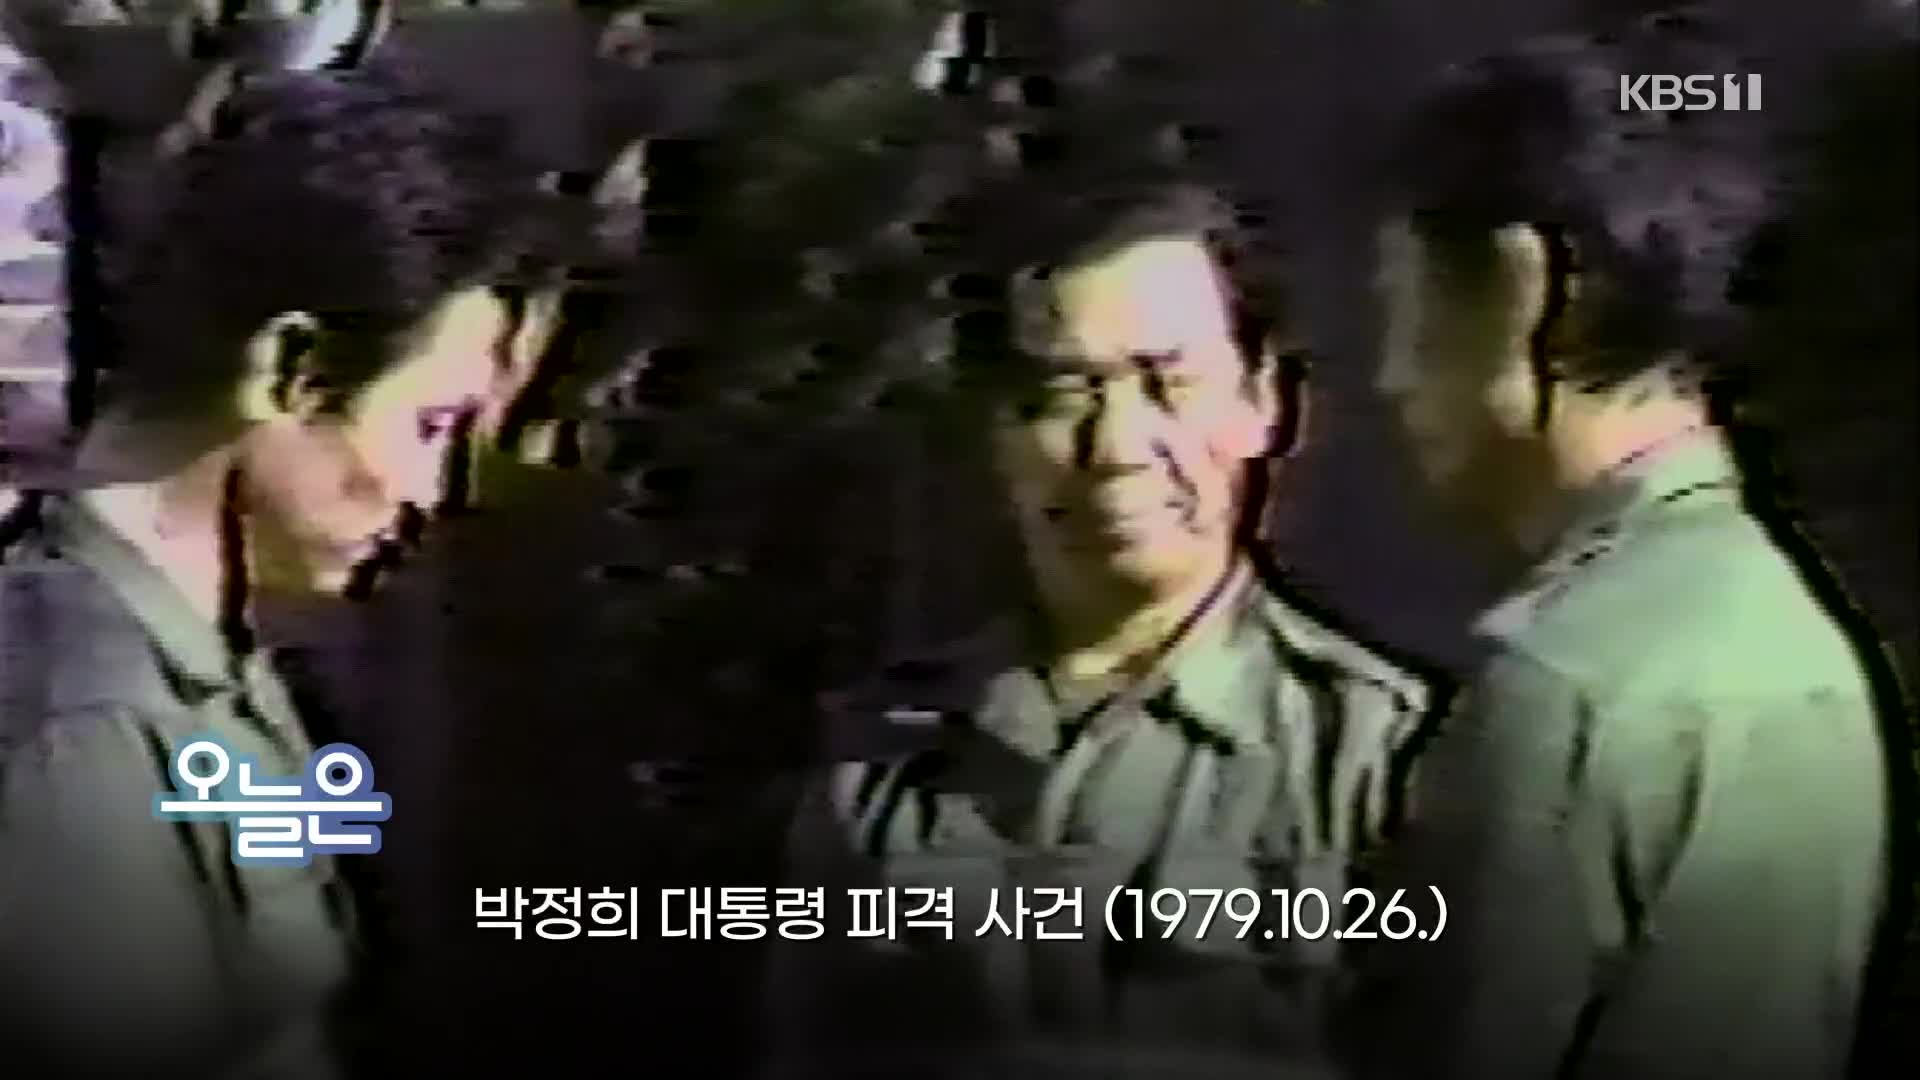 [오늘은] 박정희 대통령 피격 사건 (1979.10.26.)